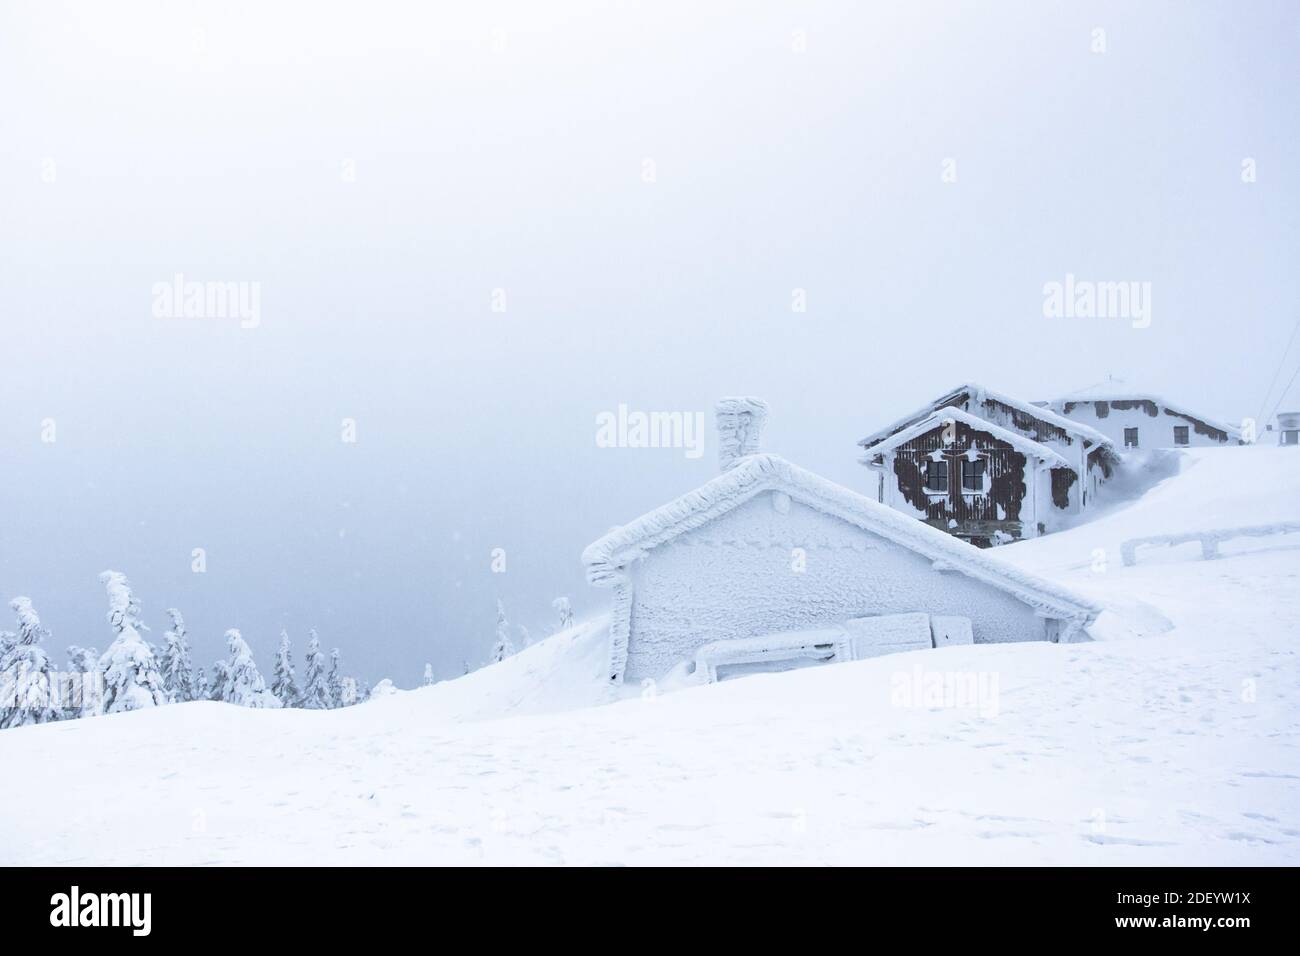 Winterpanorama-Landschaft mit Hütte, Bäume bedeckt Schnee, Nebel. Winter Hintergrund von Schnee und Frost.malerische und wunderschöne Winterszene.Weihnachten Stockfoto